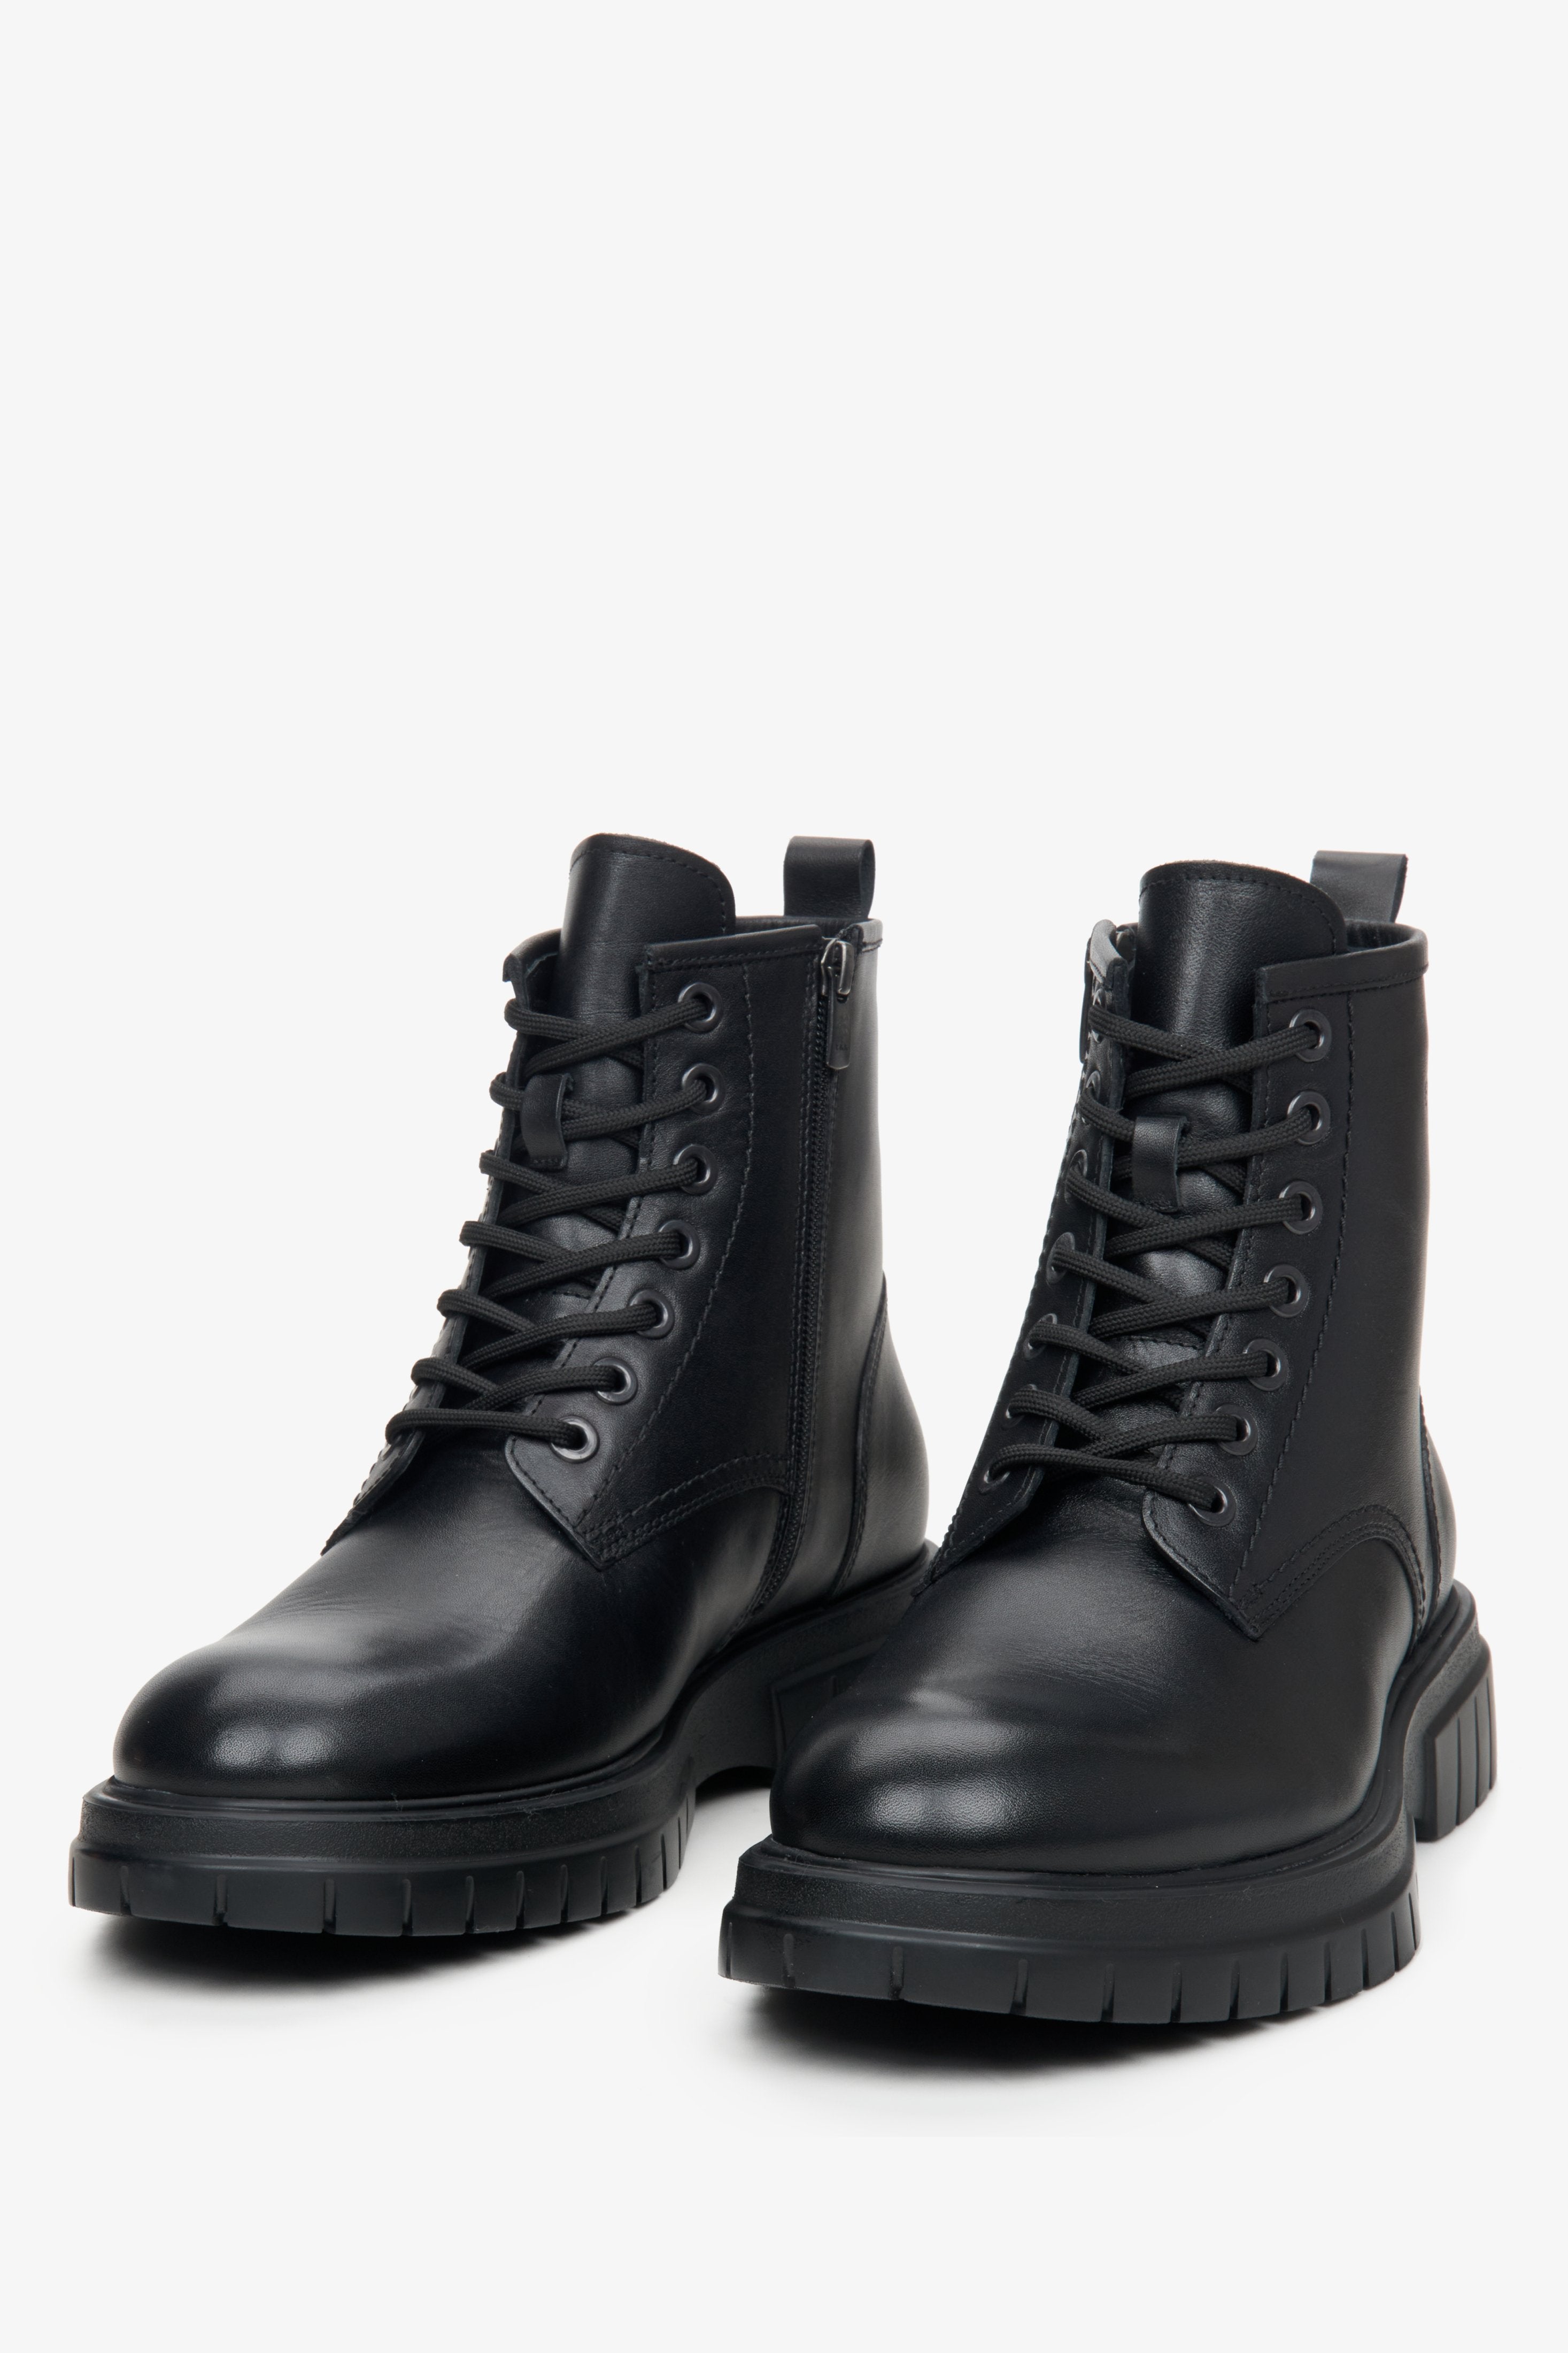 Czarne, skórzane botki męskie Estro na zimę - zbliżenie na czubek buta i ozdobne sznurowanie.